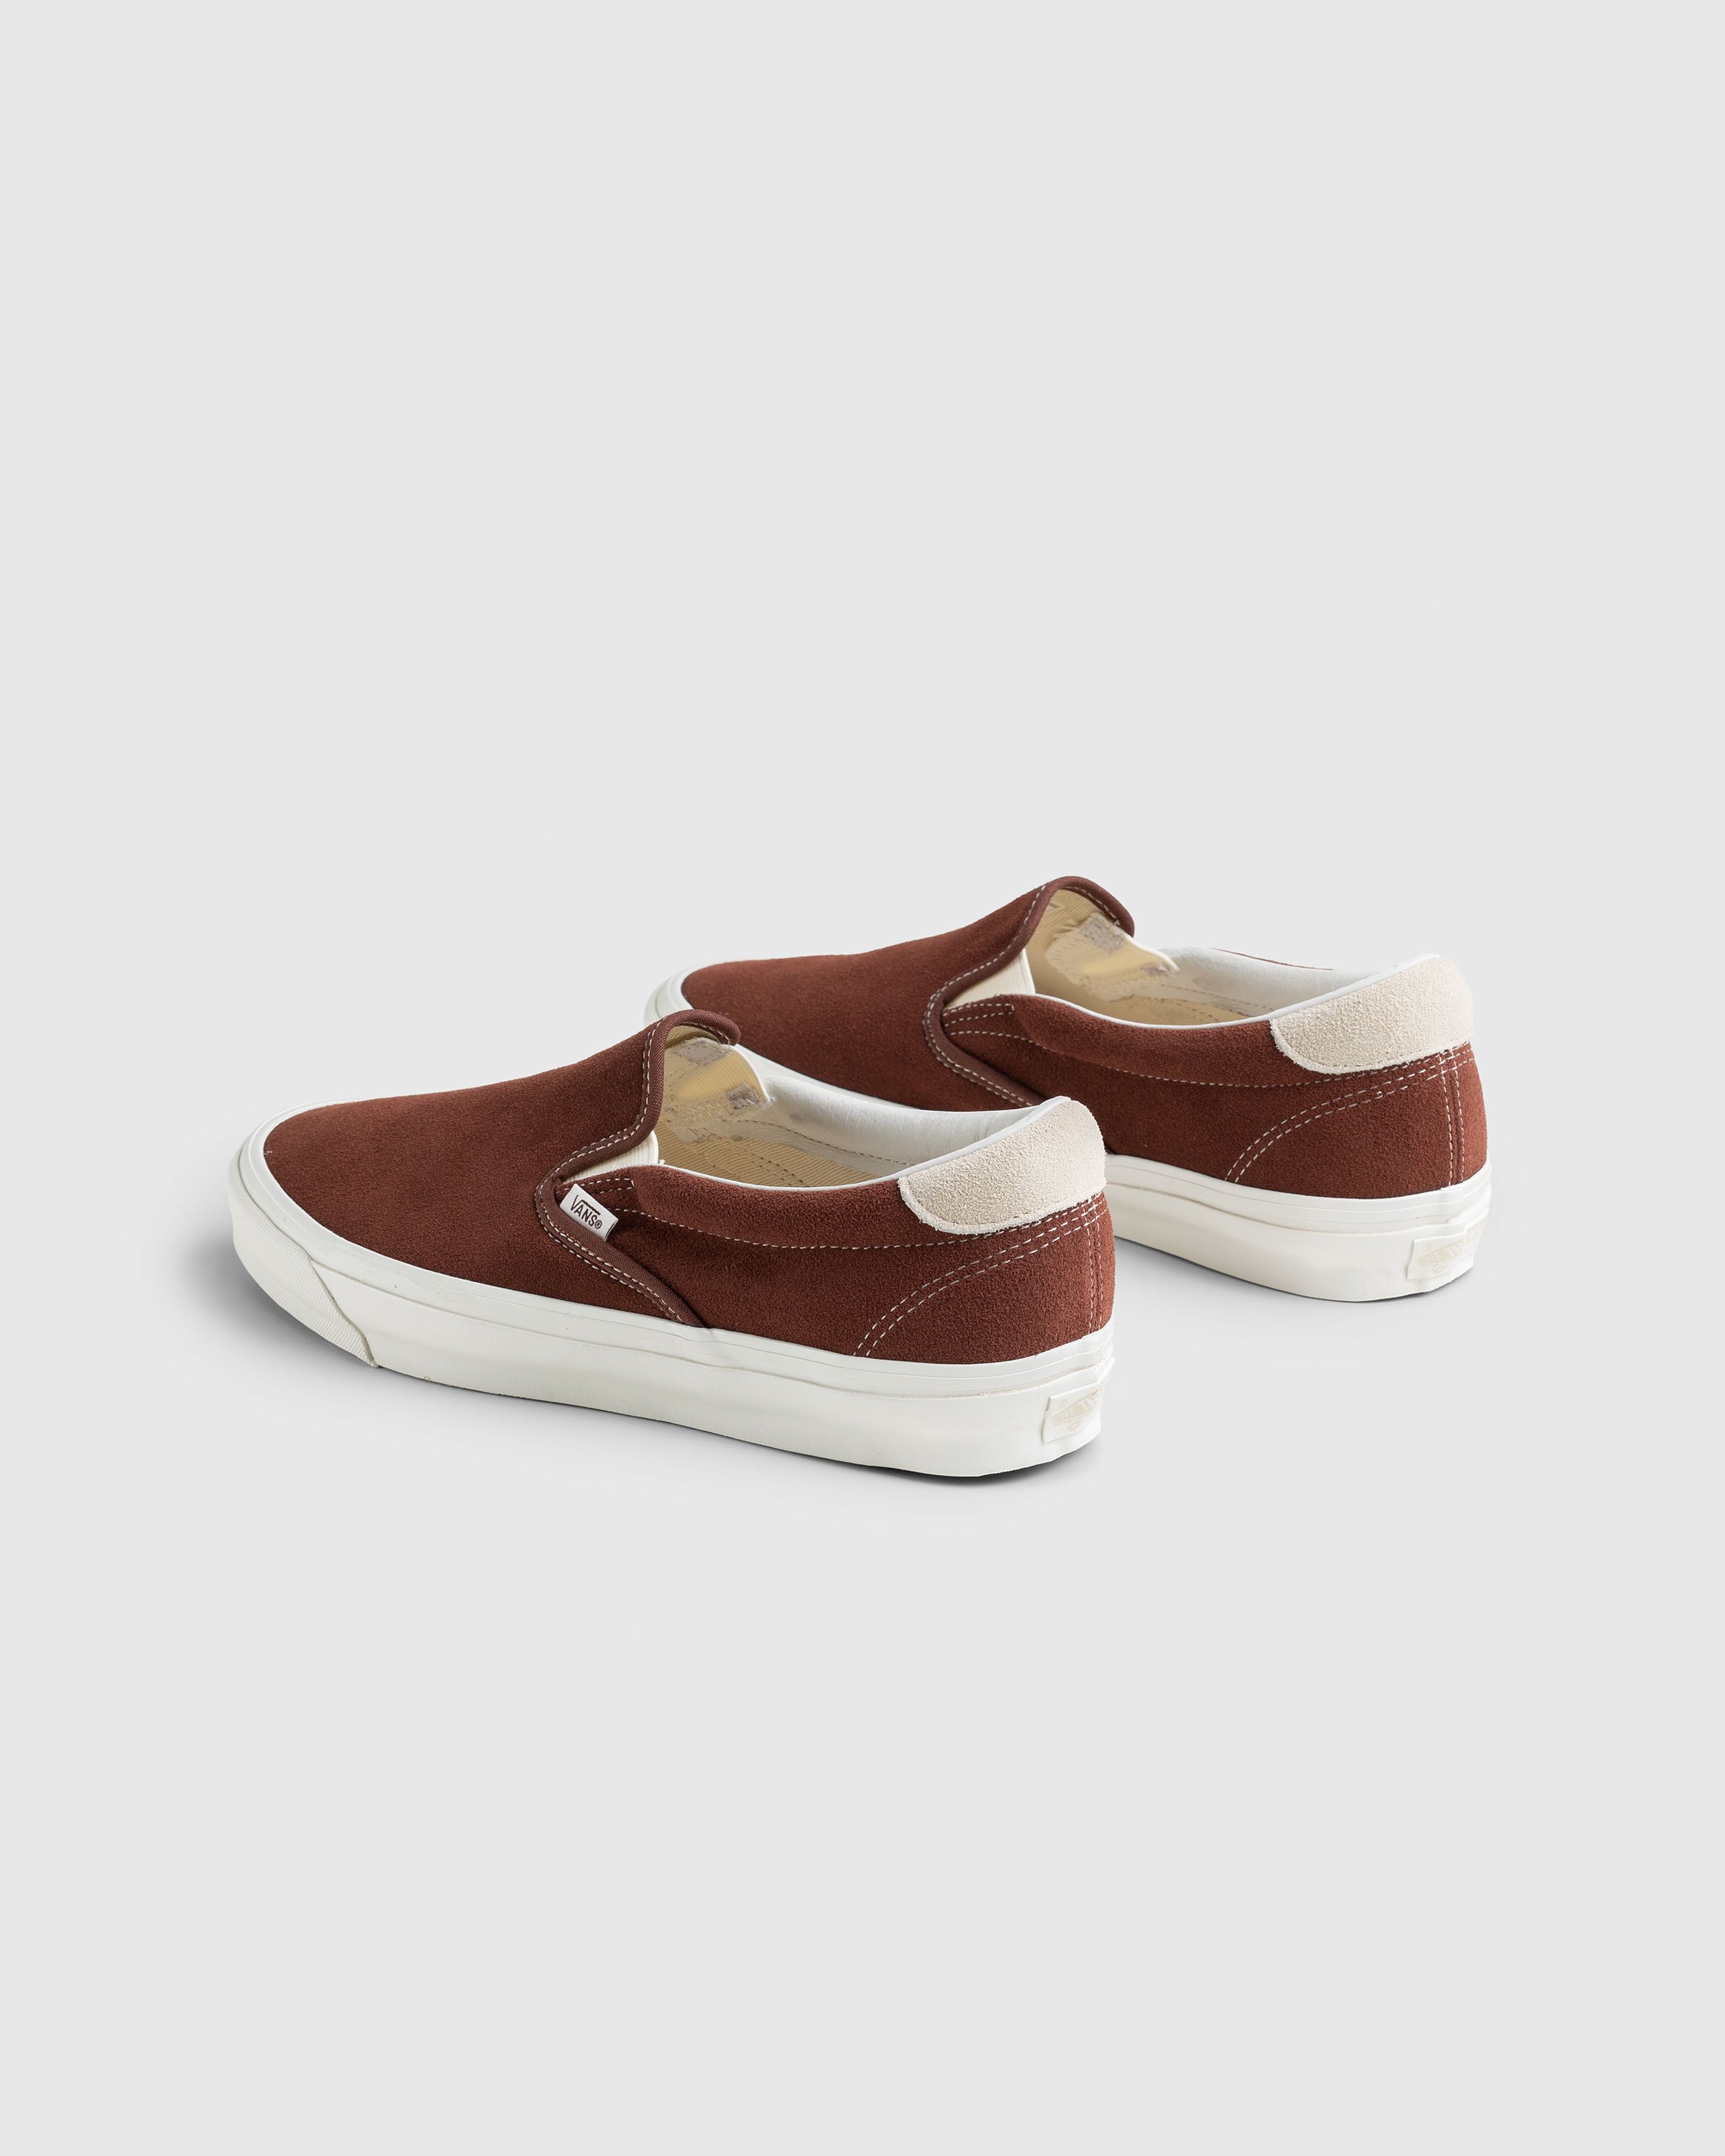 Vans - OG Slip-On 59 LX Suede Brown - Footwear - Brown - Image 4